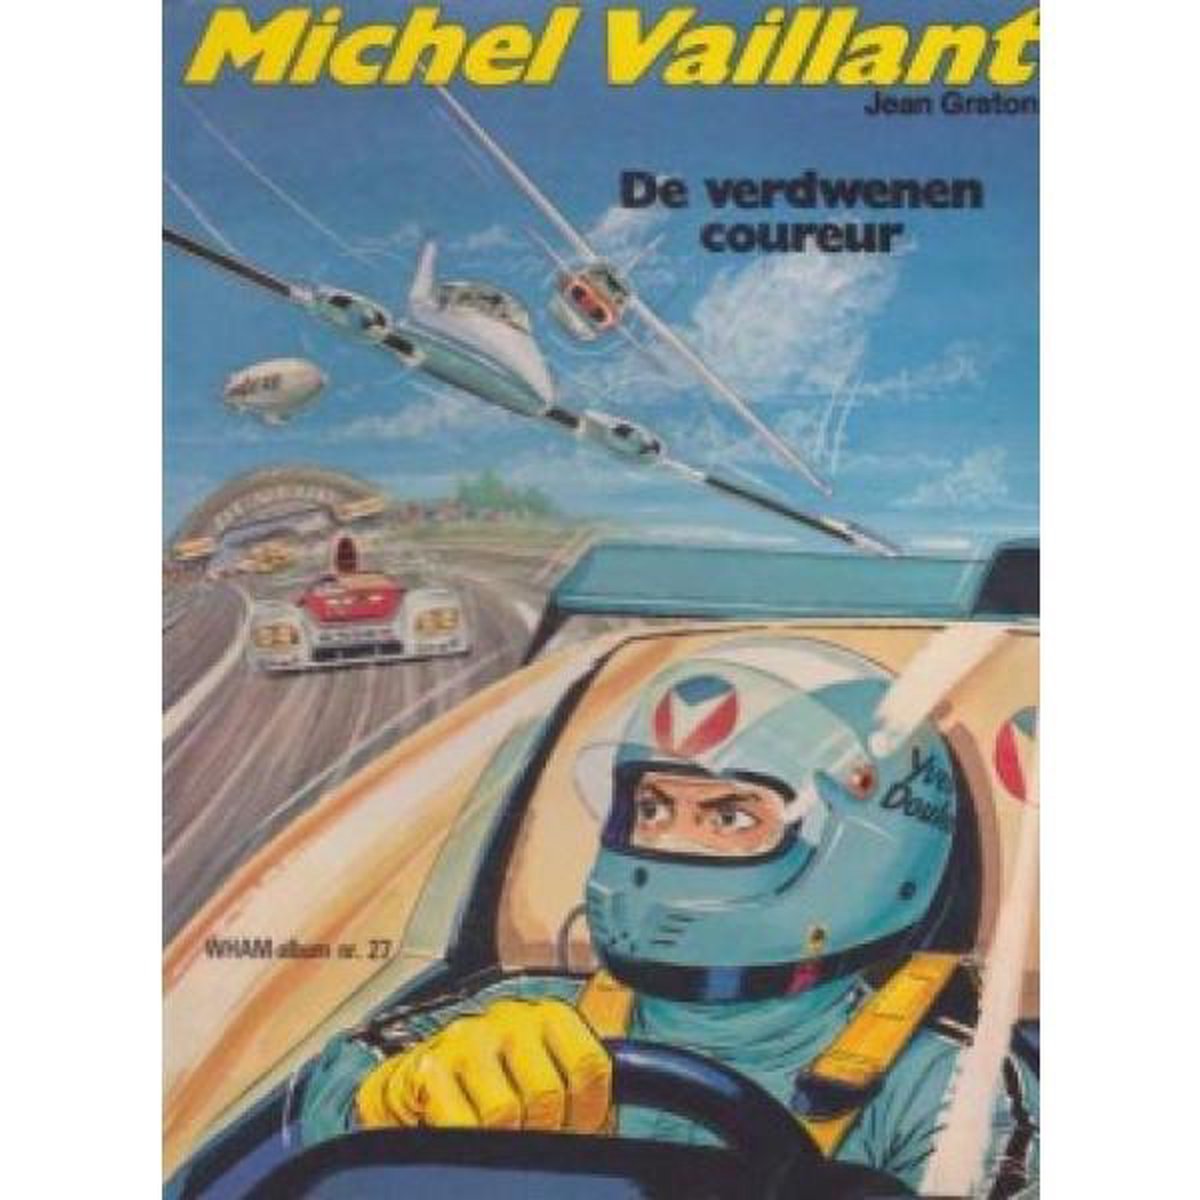 Michel Vaillant - De verdwenen coureur - Jean Graton - WHAM-album nr. 27